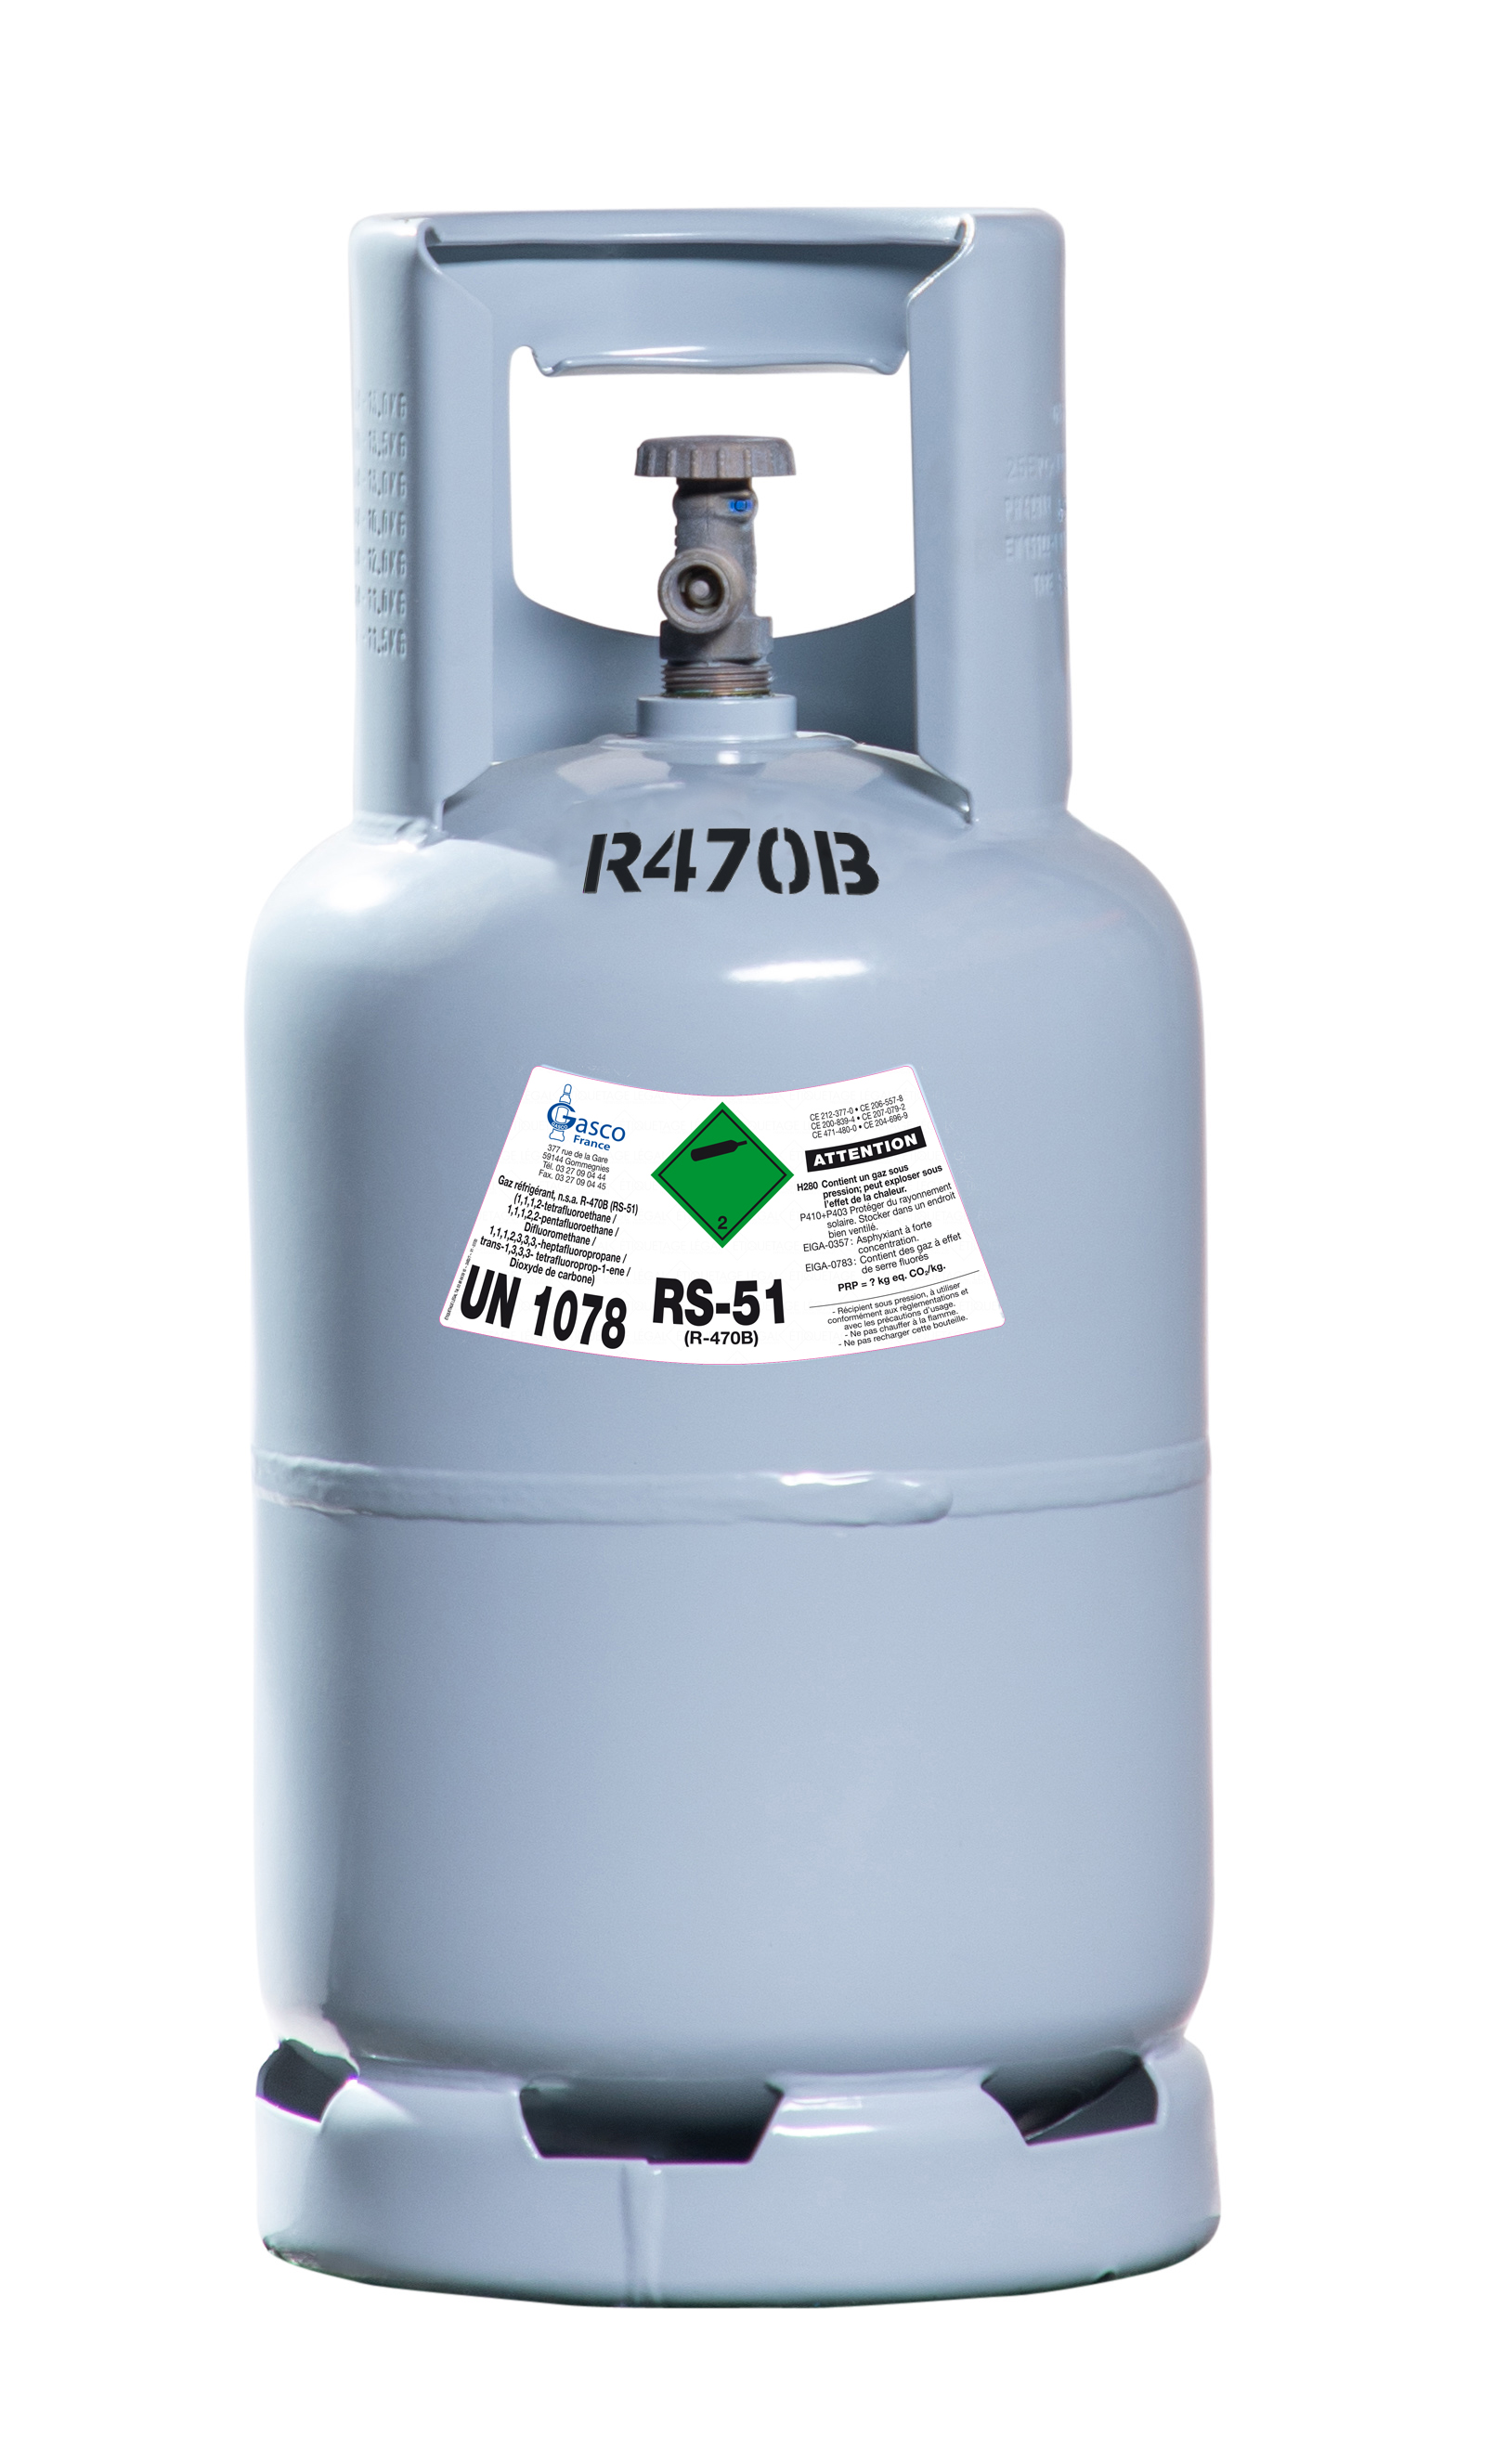 Gaz réfrigérant R470B - RS-51